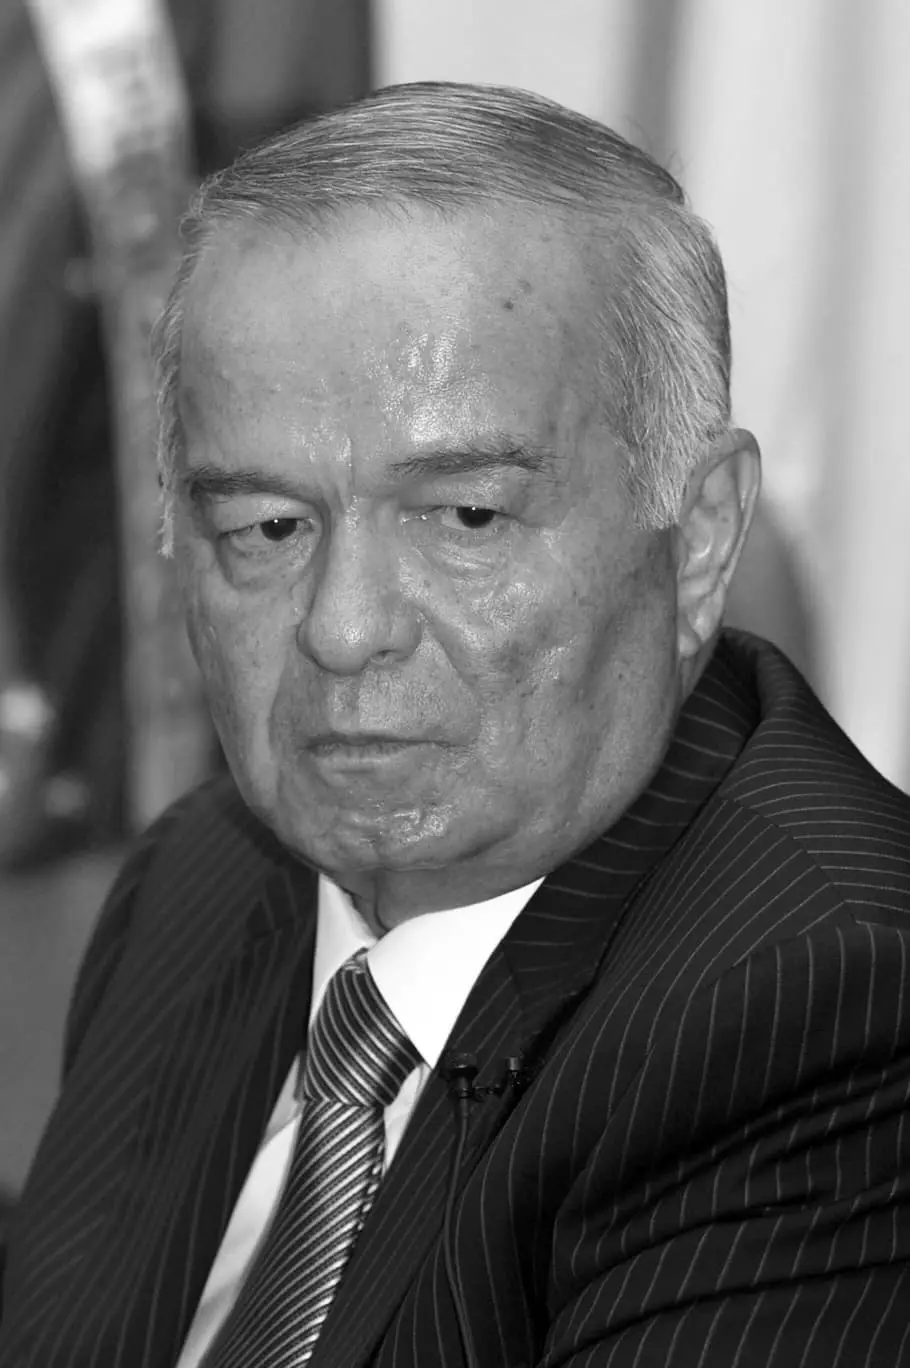 Islam Karimov - Biography, Saripika, Fiainan'ny tena manokana, Fahafatesana